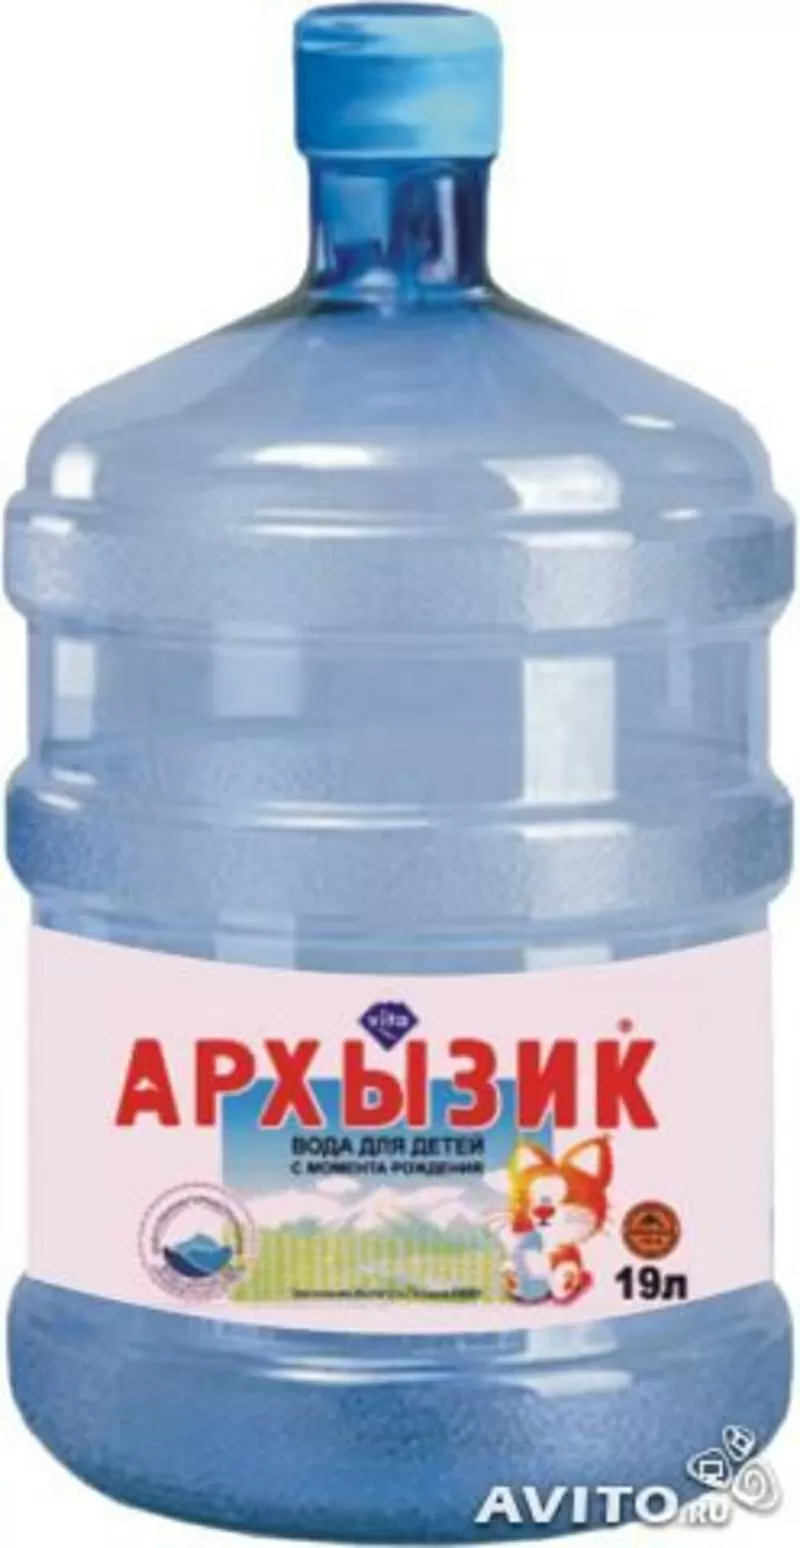 доставка питьевой воды в Краснодаре и Анапе 5